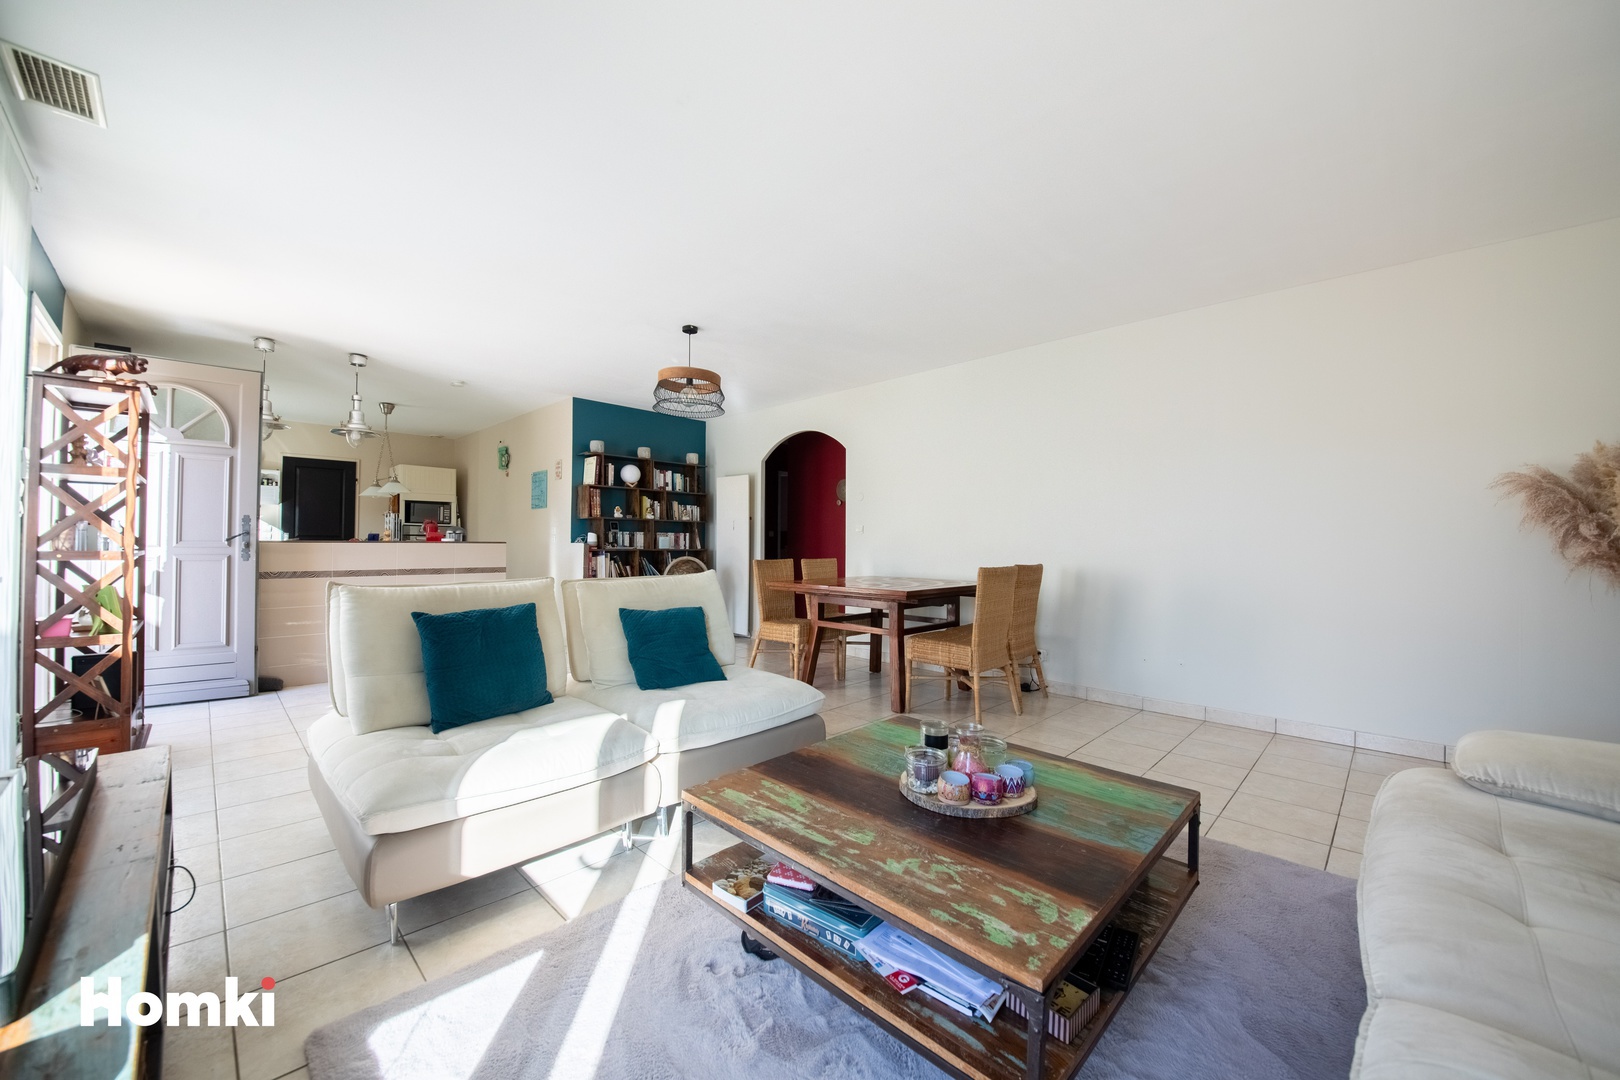 Homki - Vente Maison/villa  de 120.0 m² à Fos-sur-Mer 13270